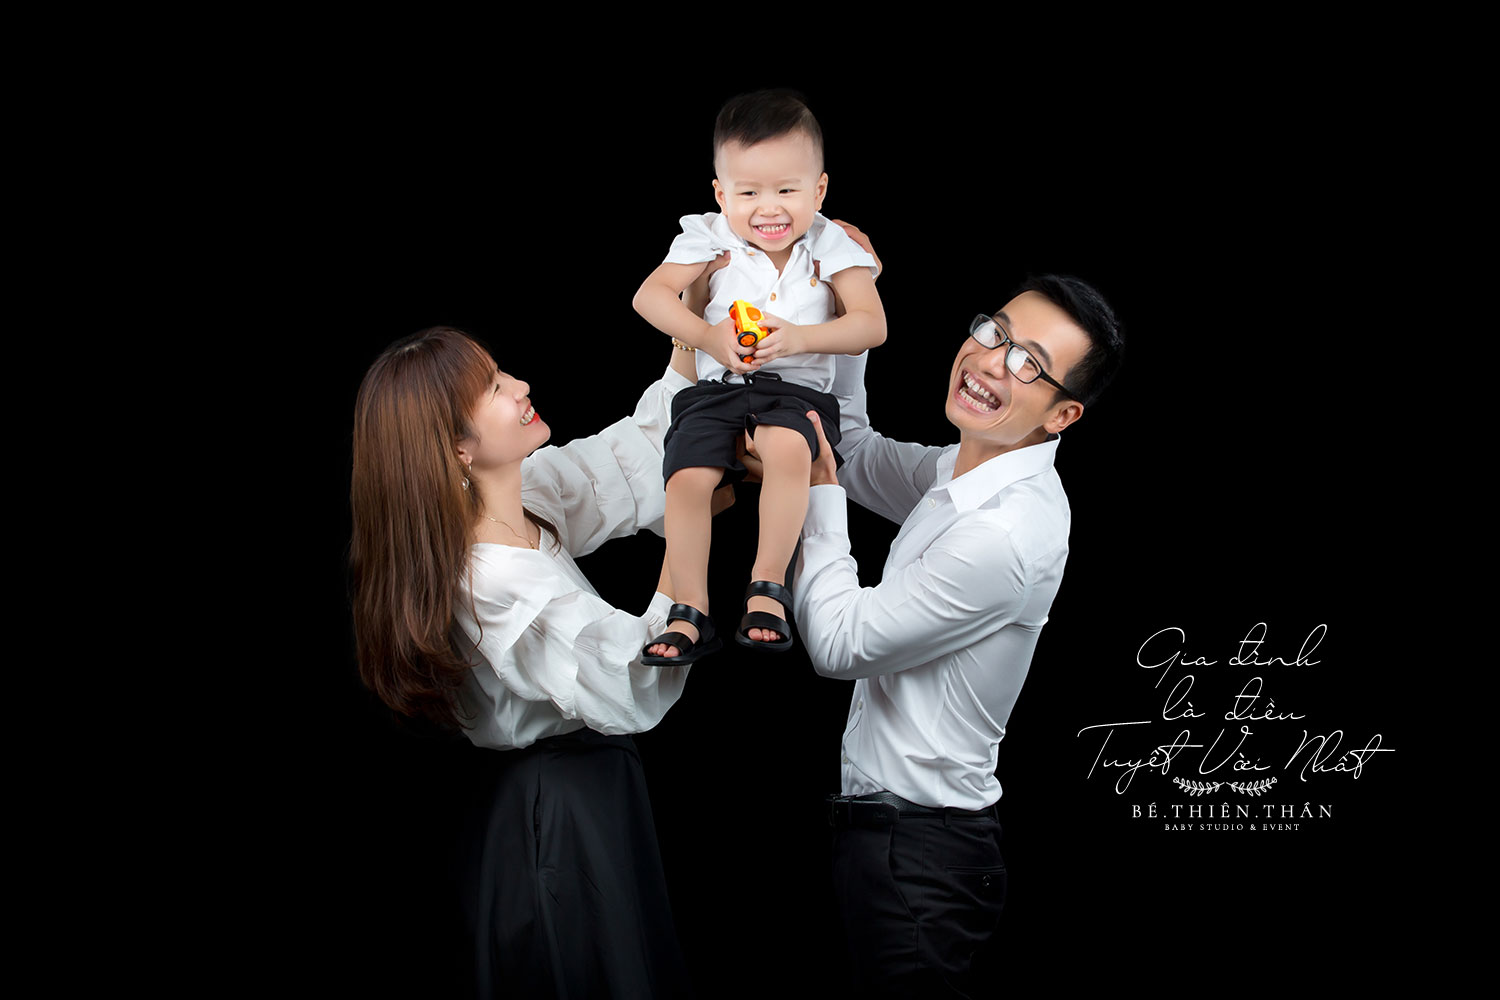 Chụp hình gia đình - Nari baby Studio - 0911686611